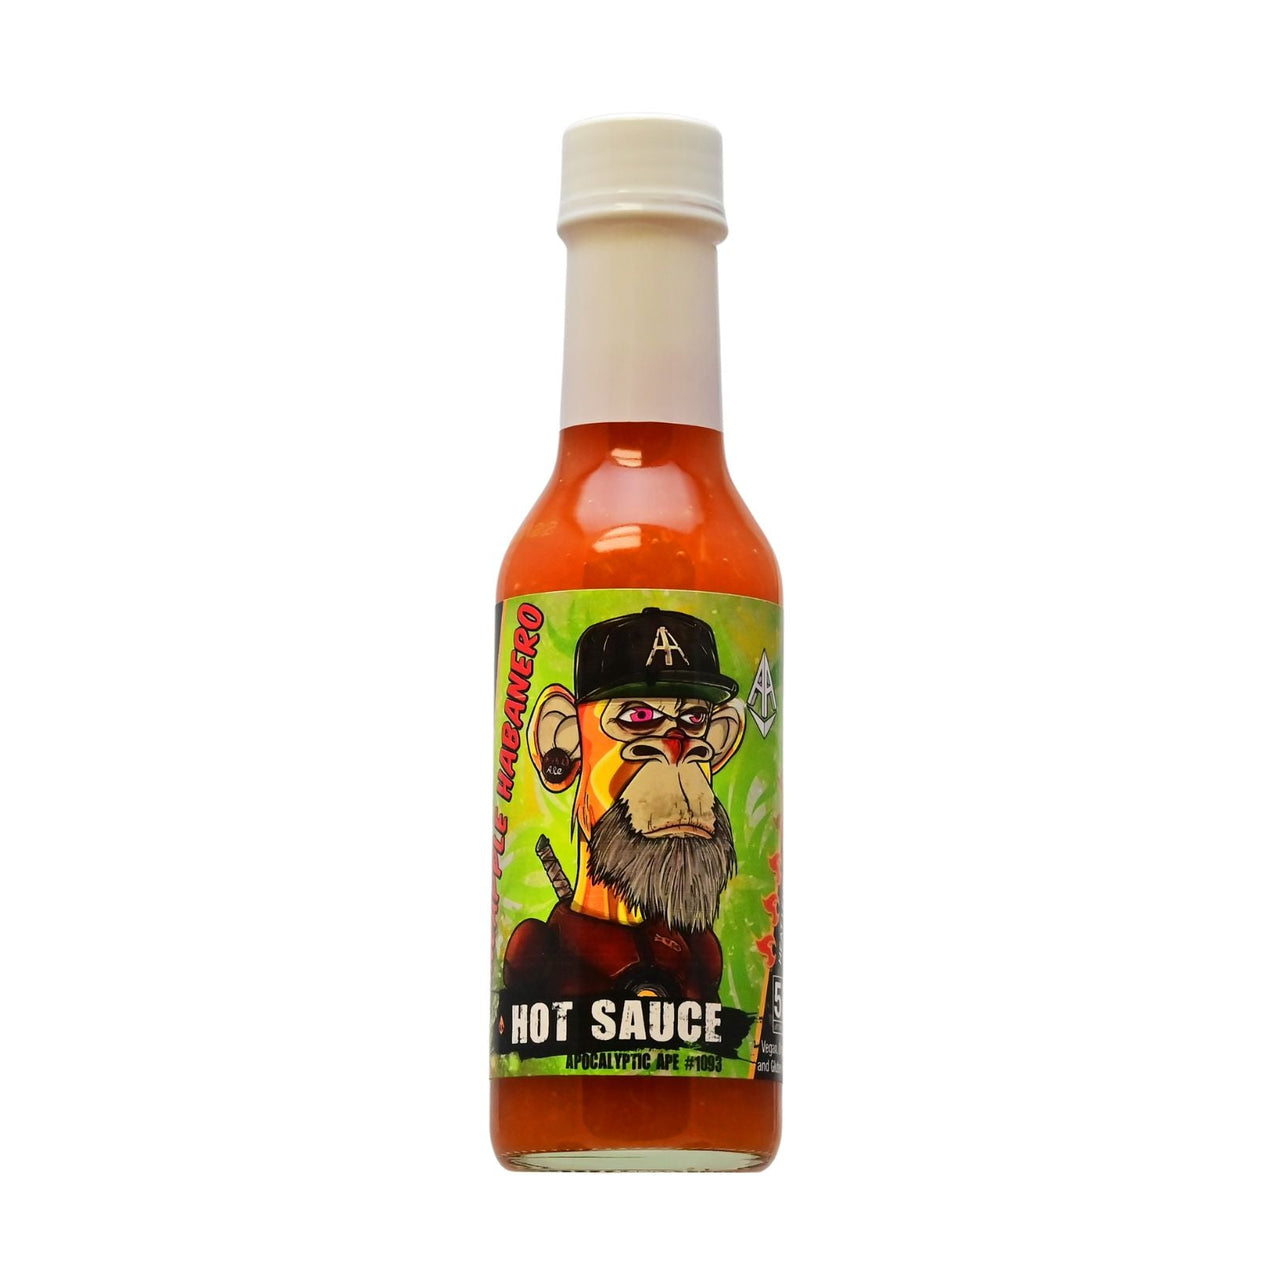 Apocalyptic Ape #1093 Pineapple Habanero Hot Sauce